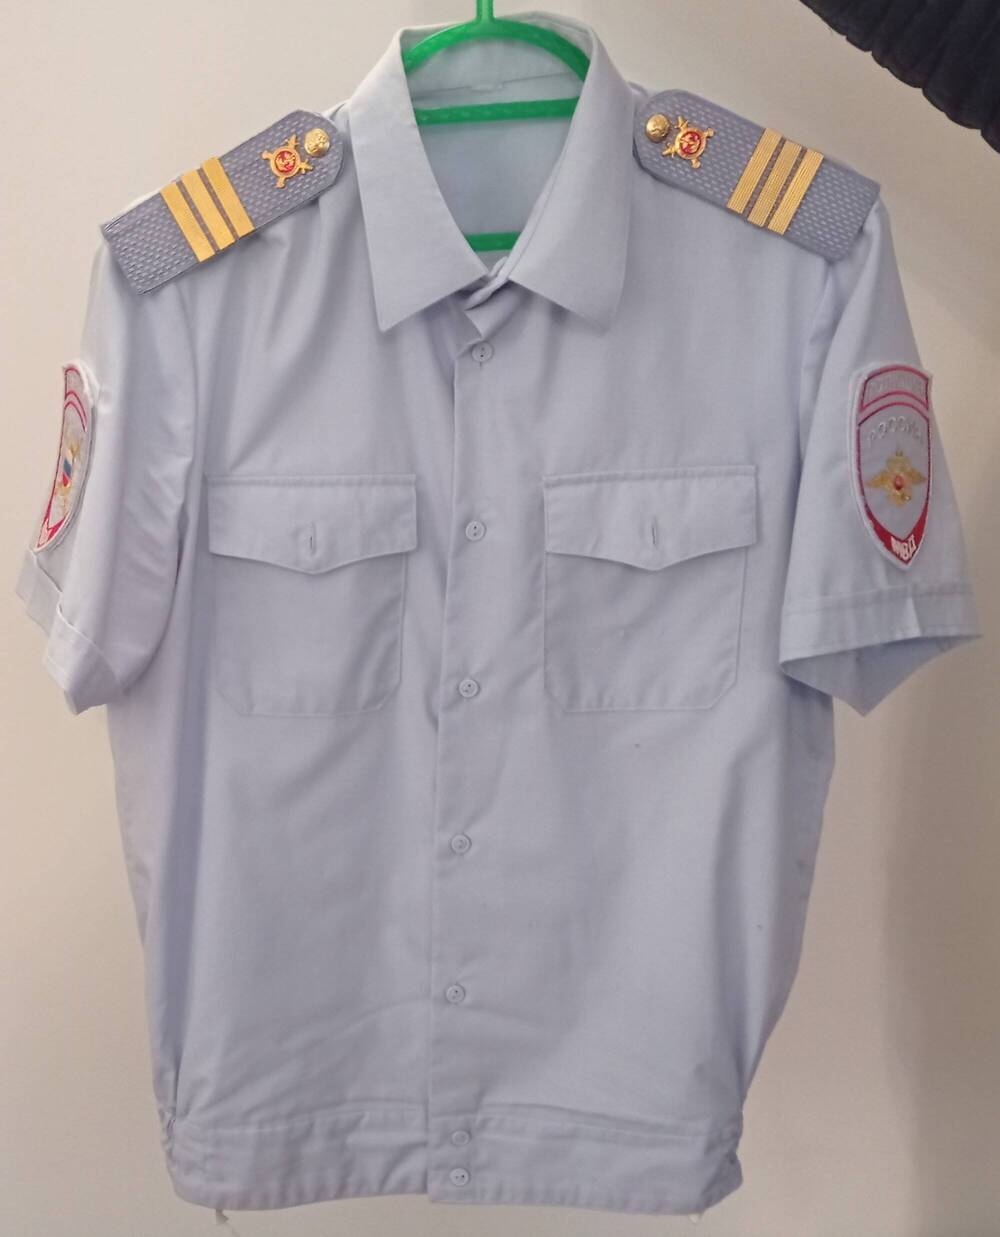 Рубаха форменная, светлая с коротким рукавом. Она принадлежала Михалёву Денису Александровичу, погибшего при исполнении в ночь на 7 января 2022 года